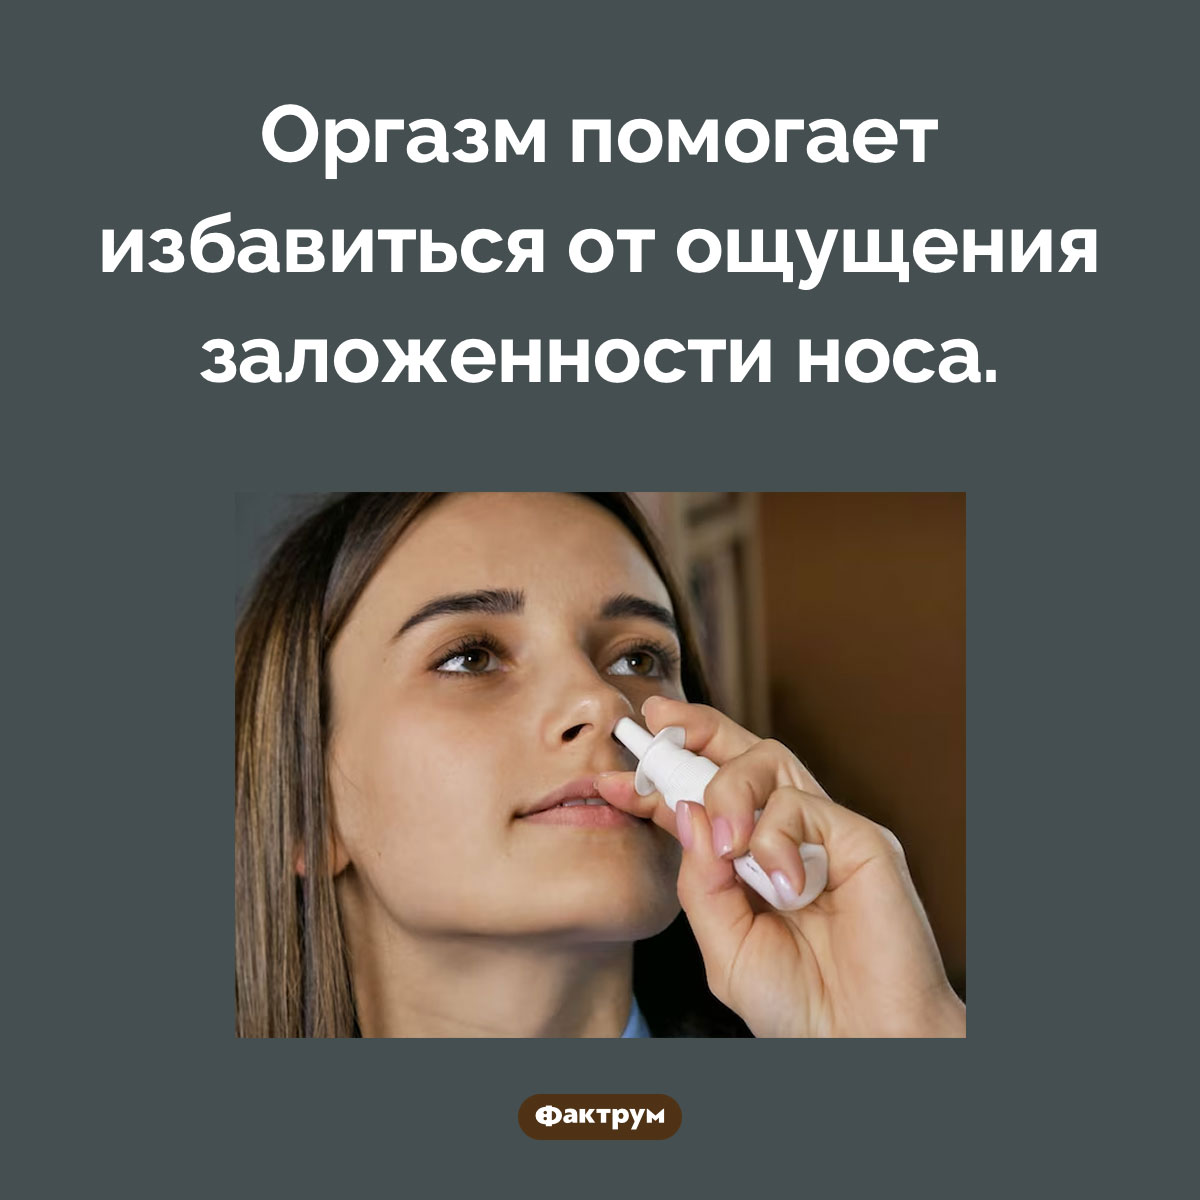 Хороший способ избавиться от заложенности носа. Оргазм помогает избавиться от ощущения заложенности носа.